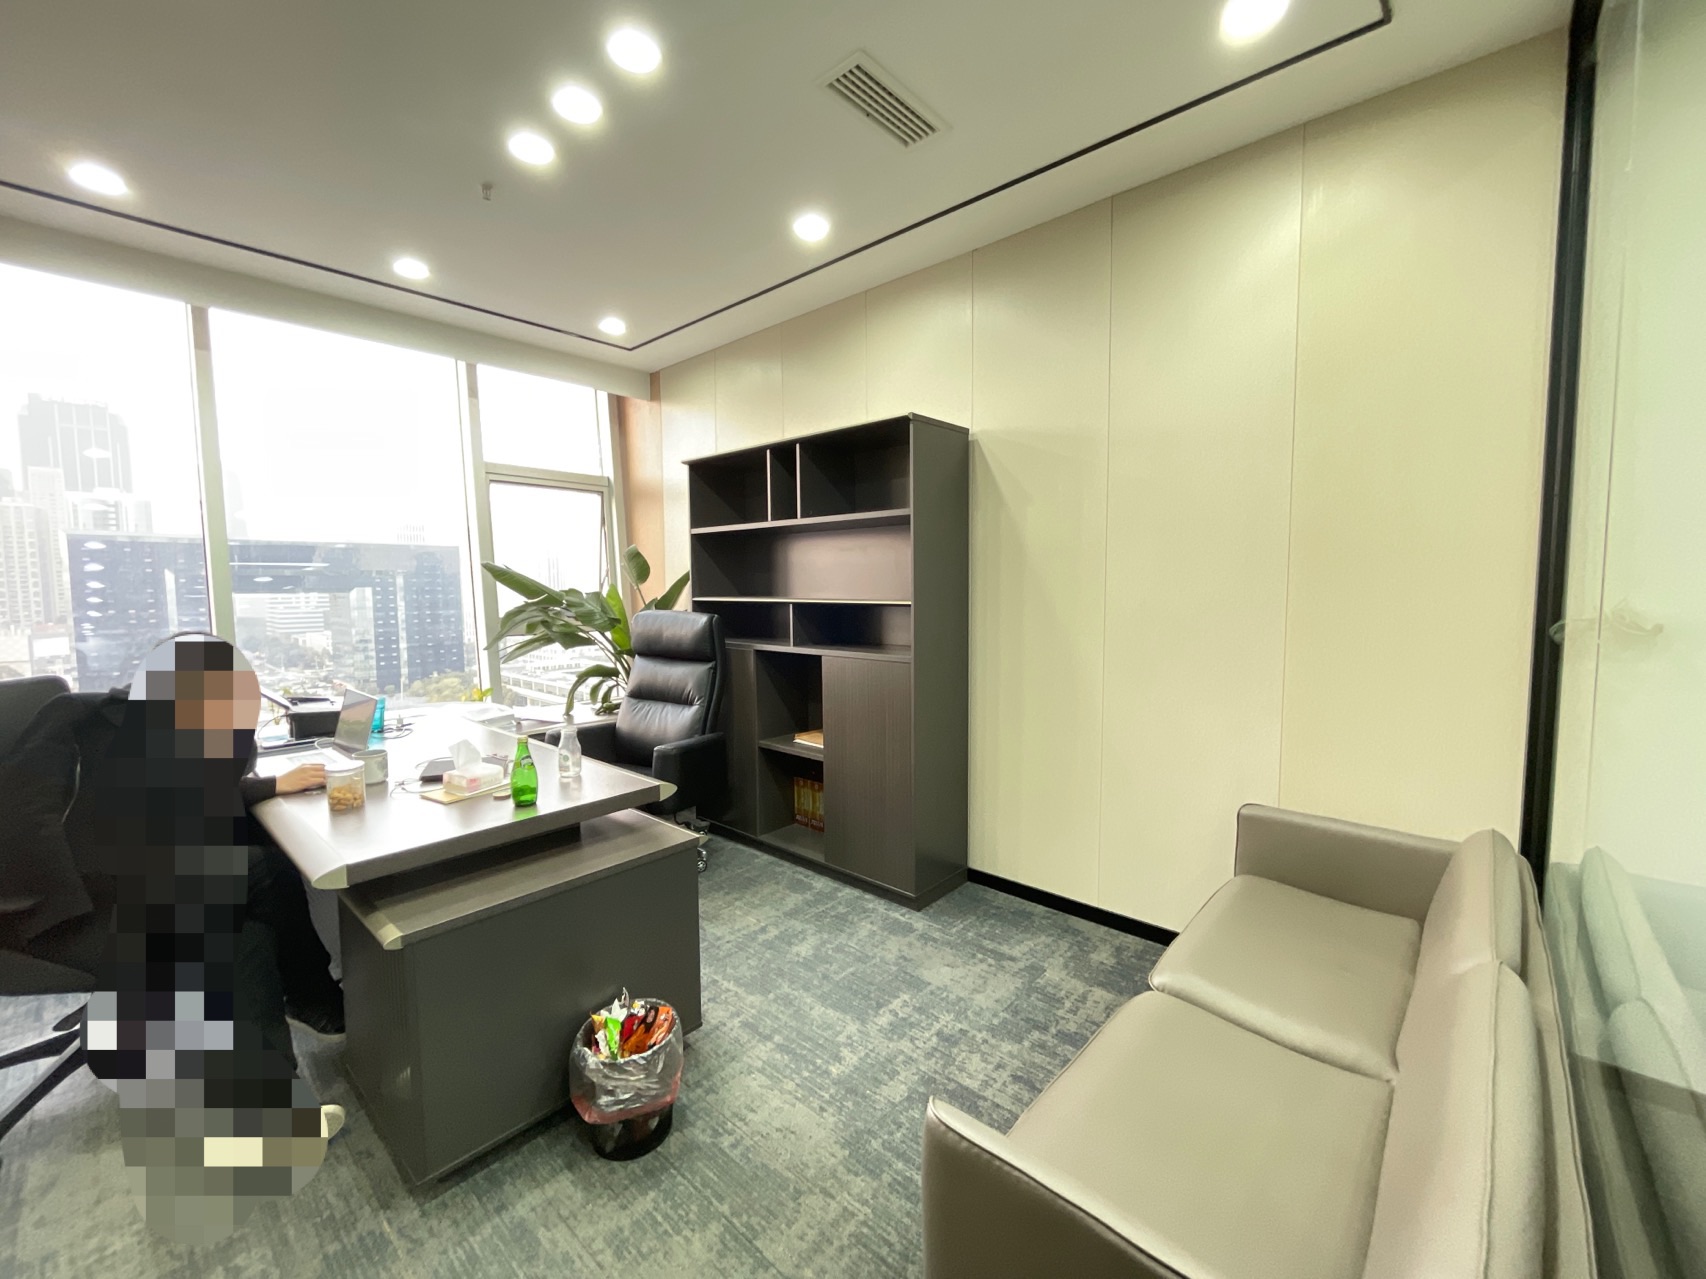 含物业 高新区新世纪环球中心精装小面积办公室 户型方正